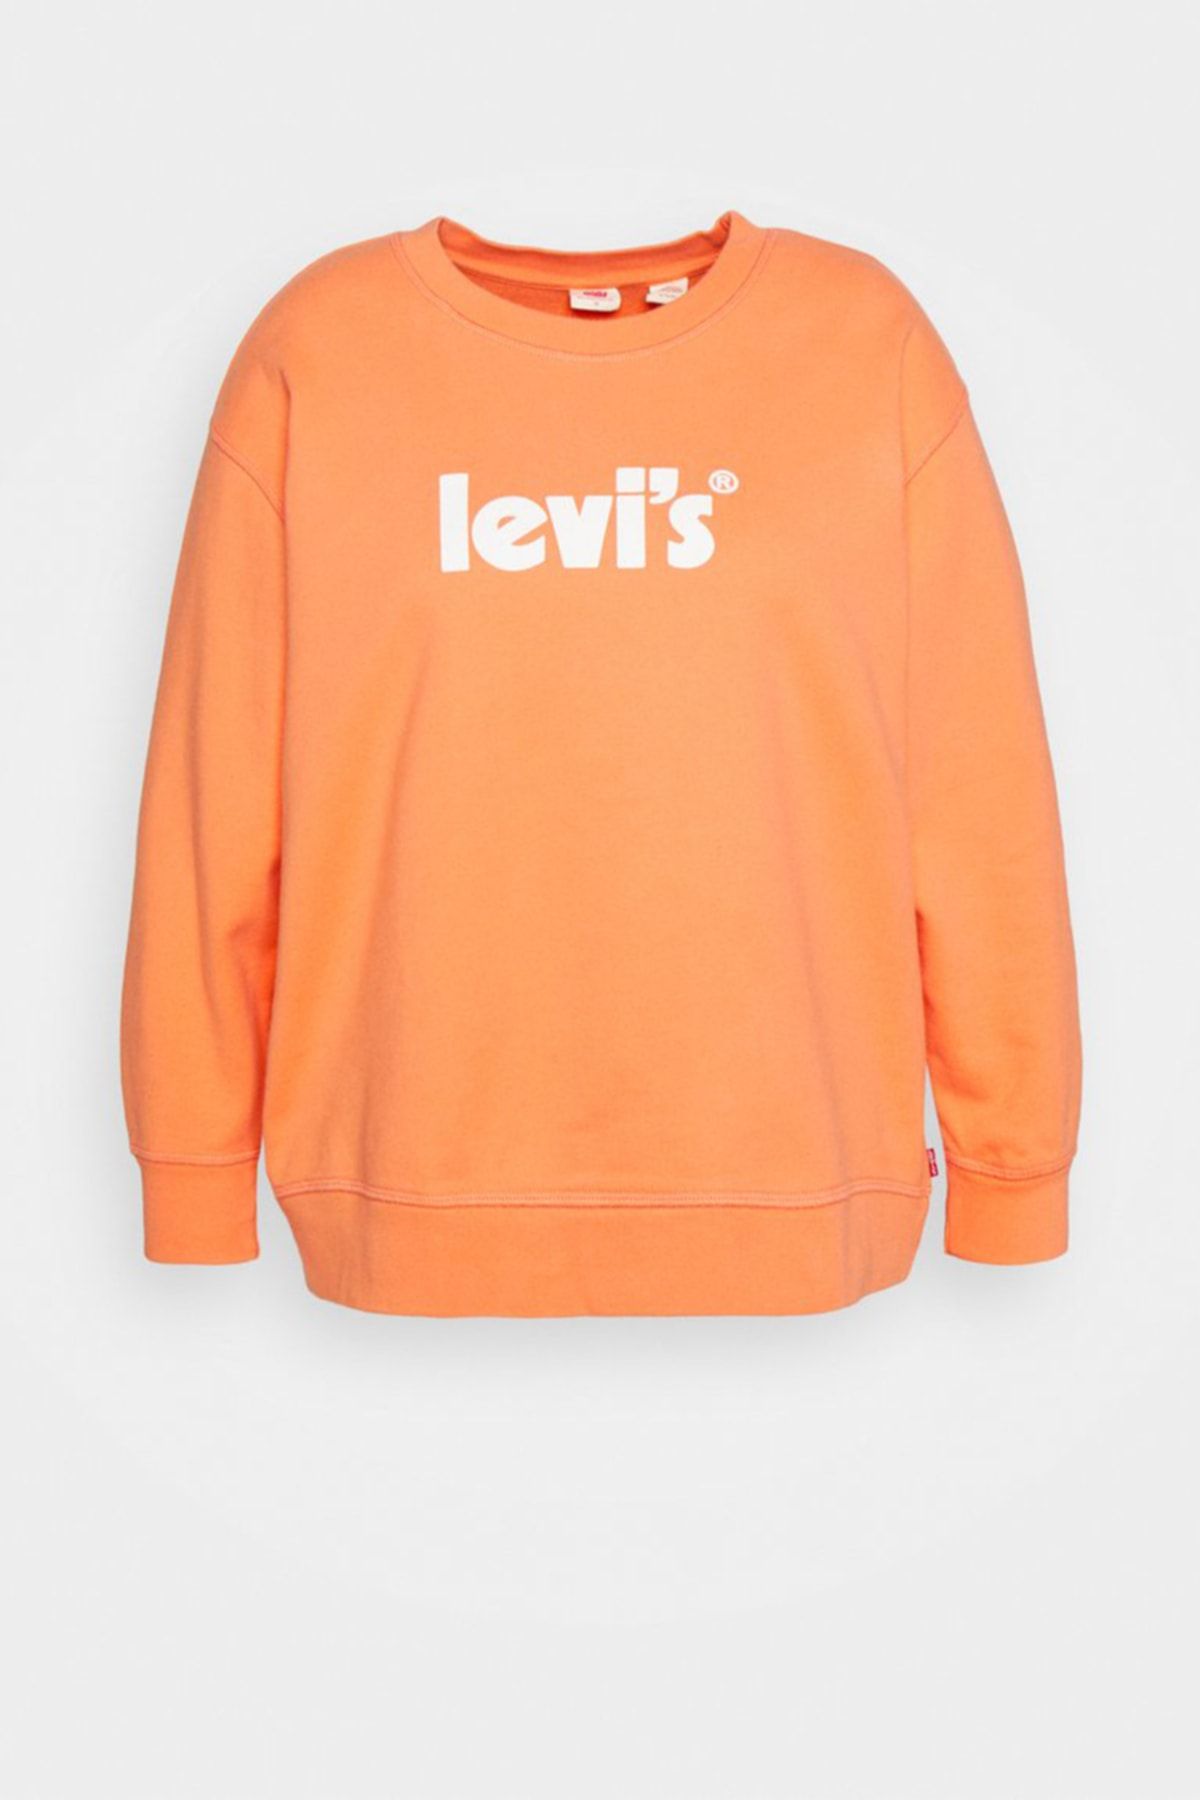 Levi's Kadın Sweatshirt Graphıc Standard Crew 18686-0075